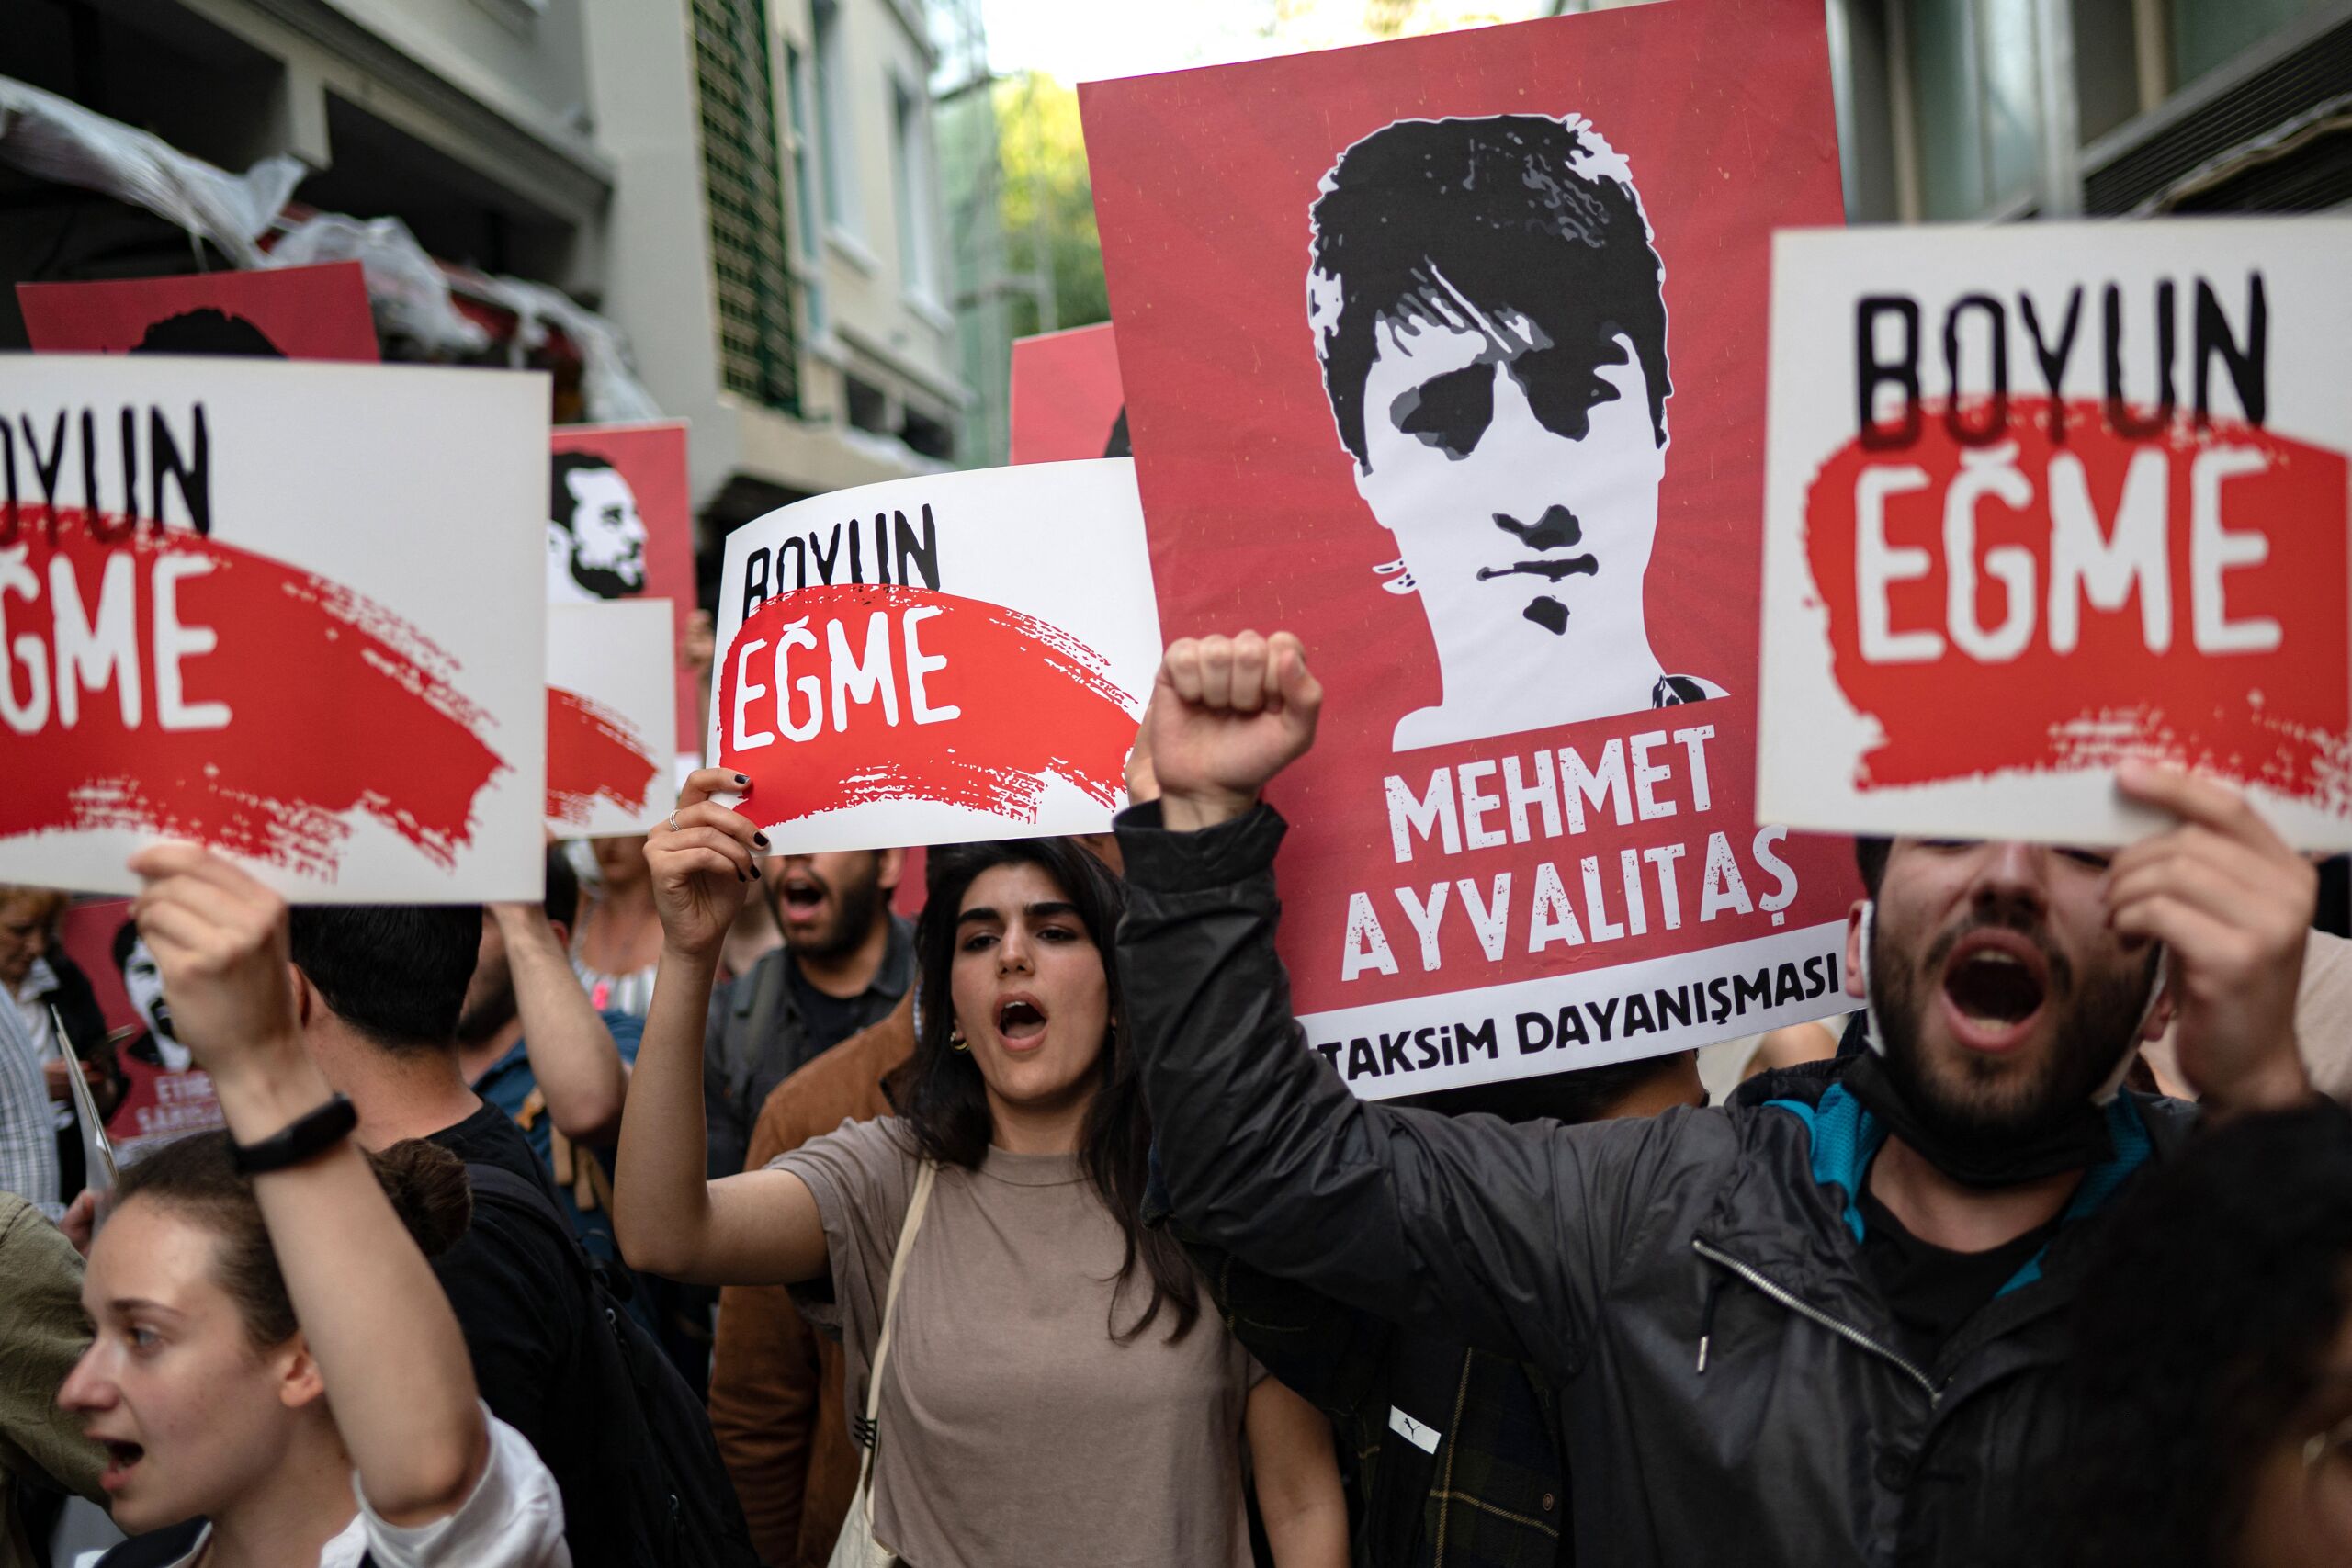 Turken demonstreren voorde vrijlating van zakenman en activist Osman Kavala die levenslang vast zit. 